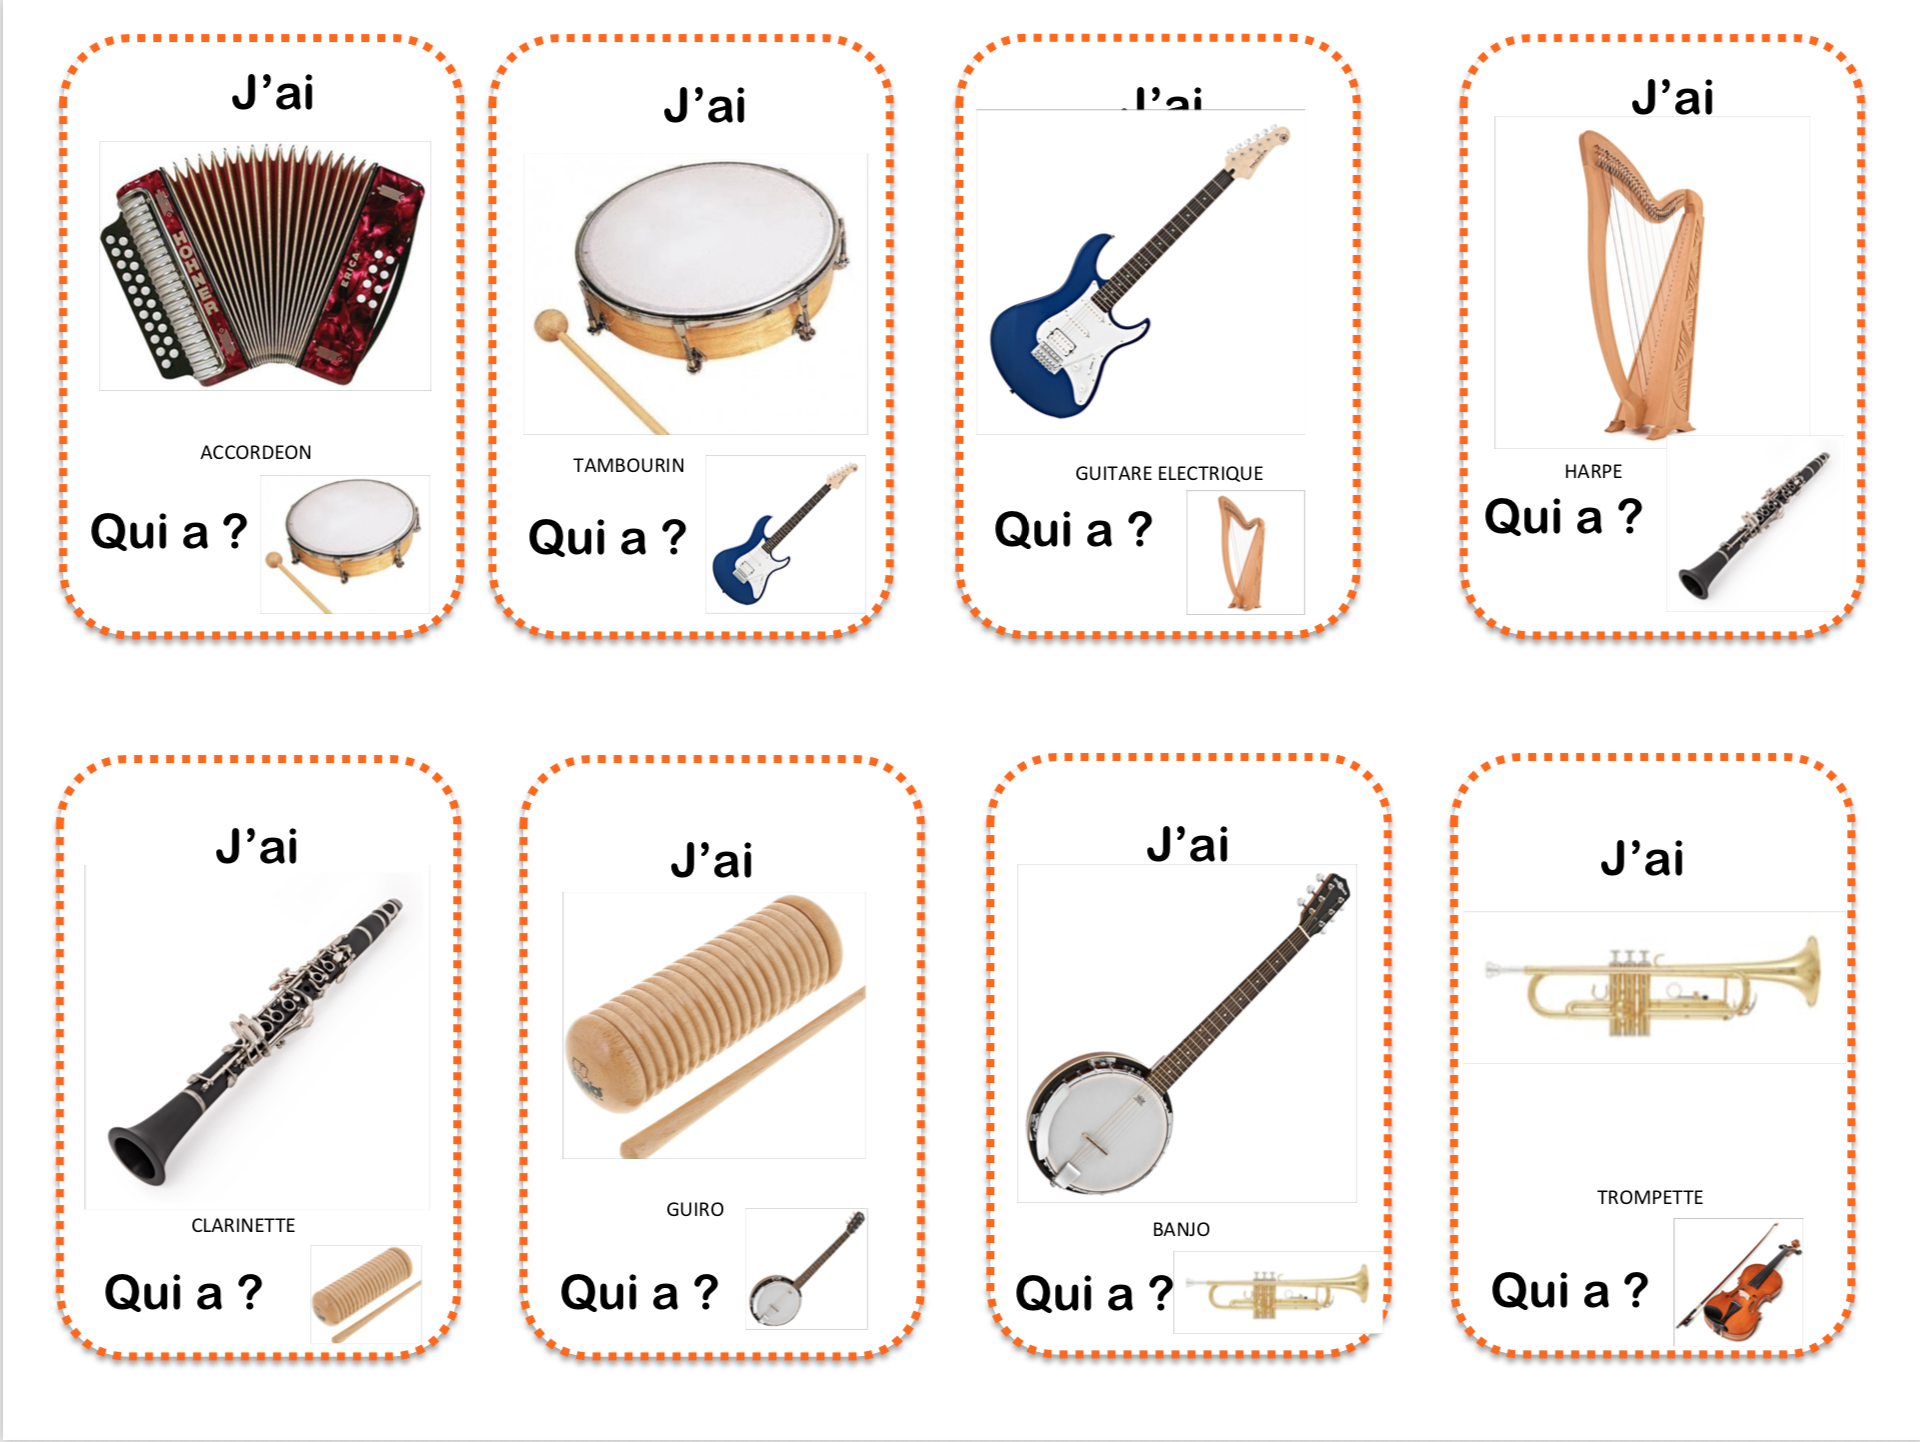 Les instruments de musique - La maternelle de Vivi